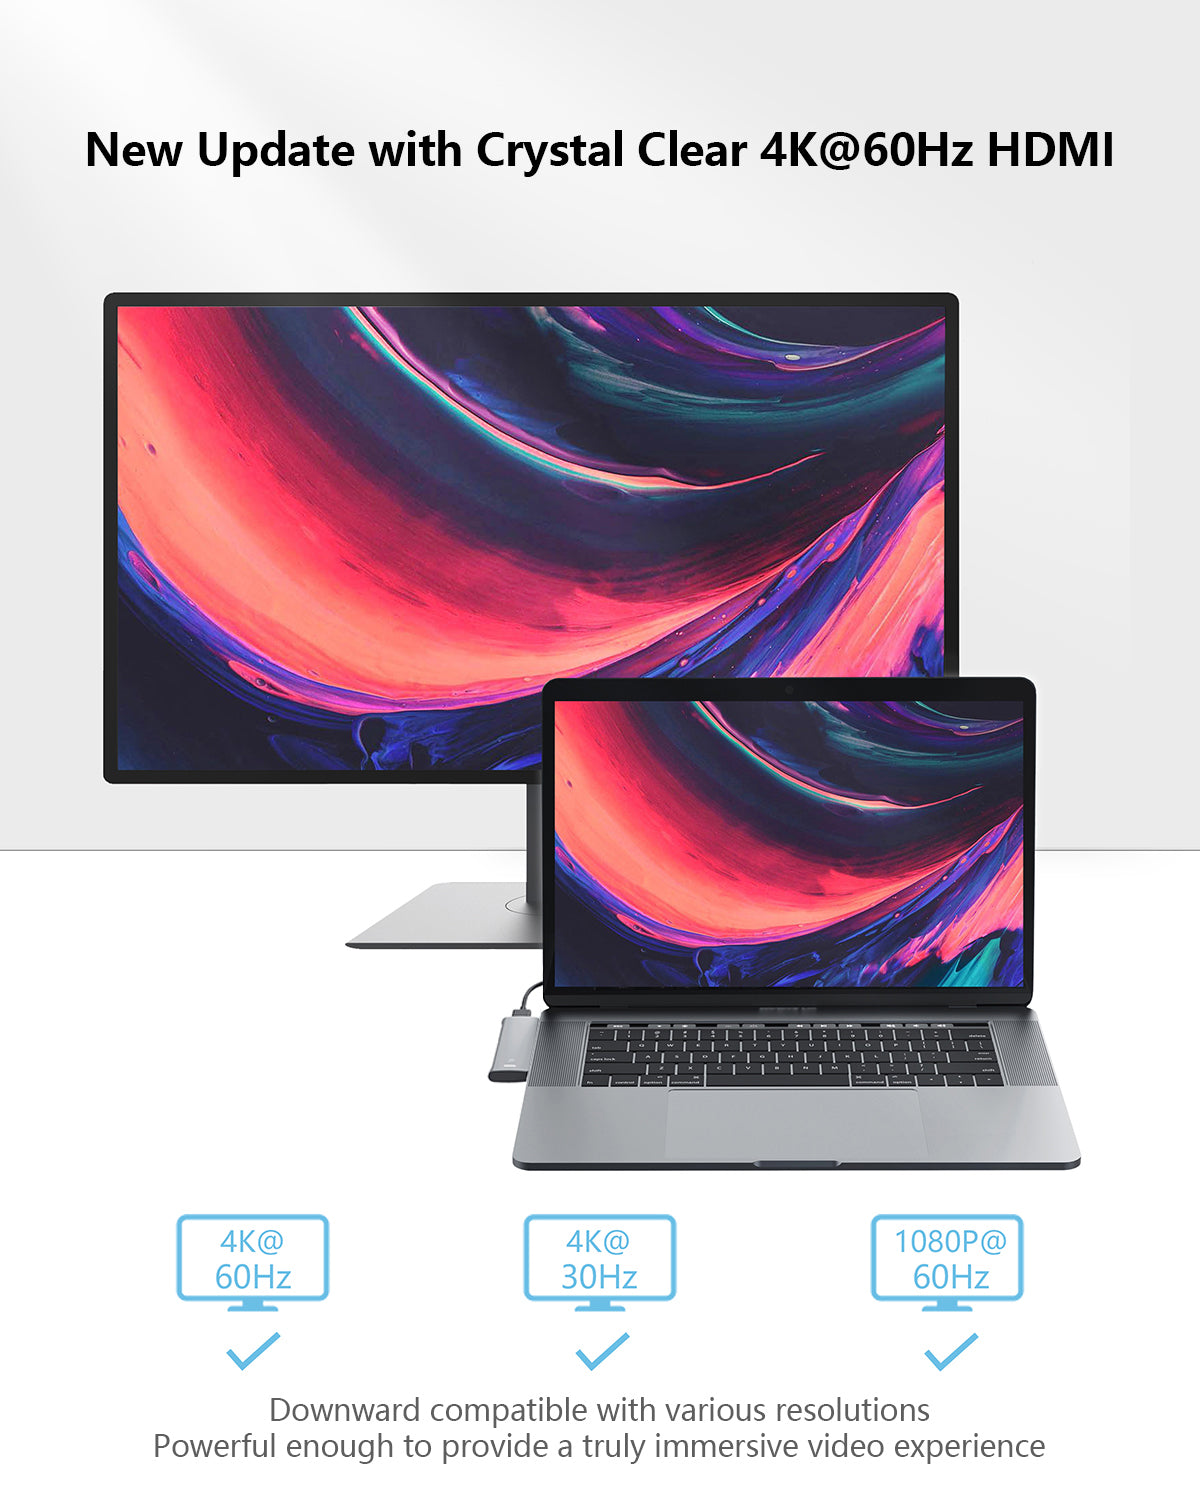 5-in-2 Mini USB C Hub for MacBook (Rose Gold) – Purgotech